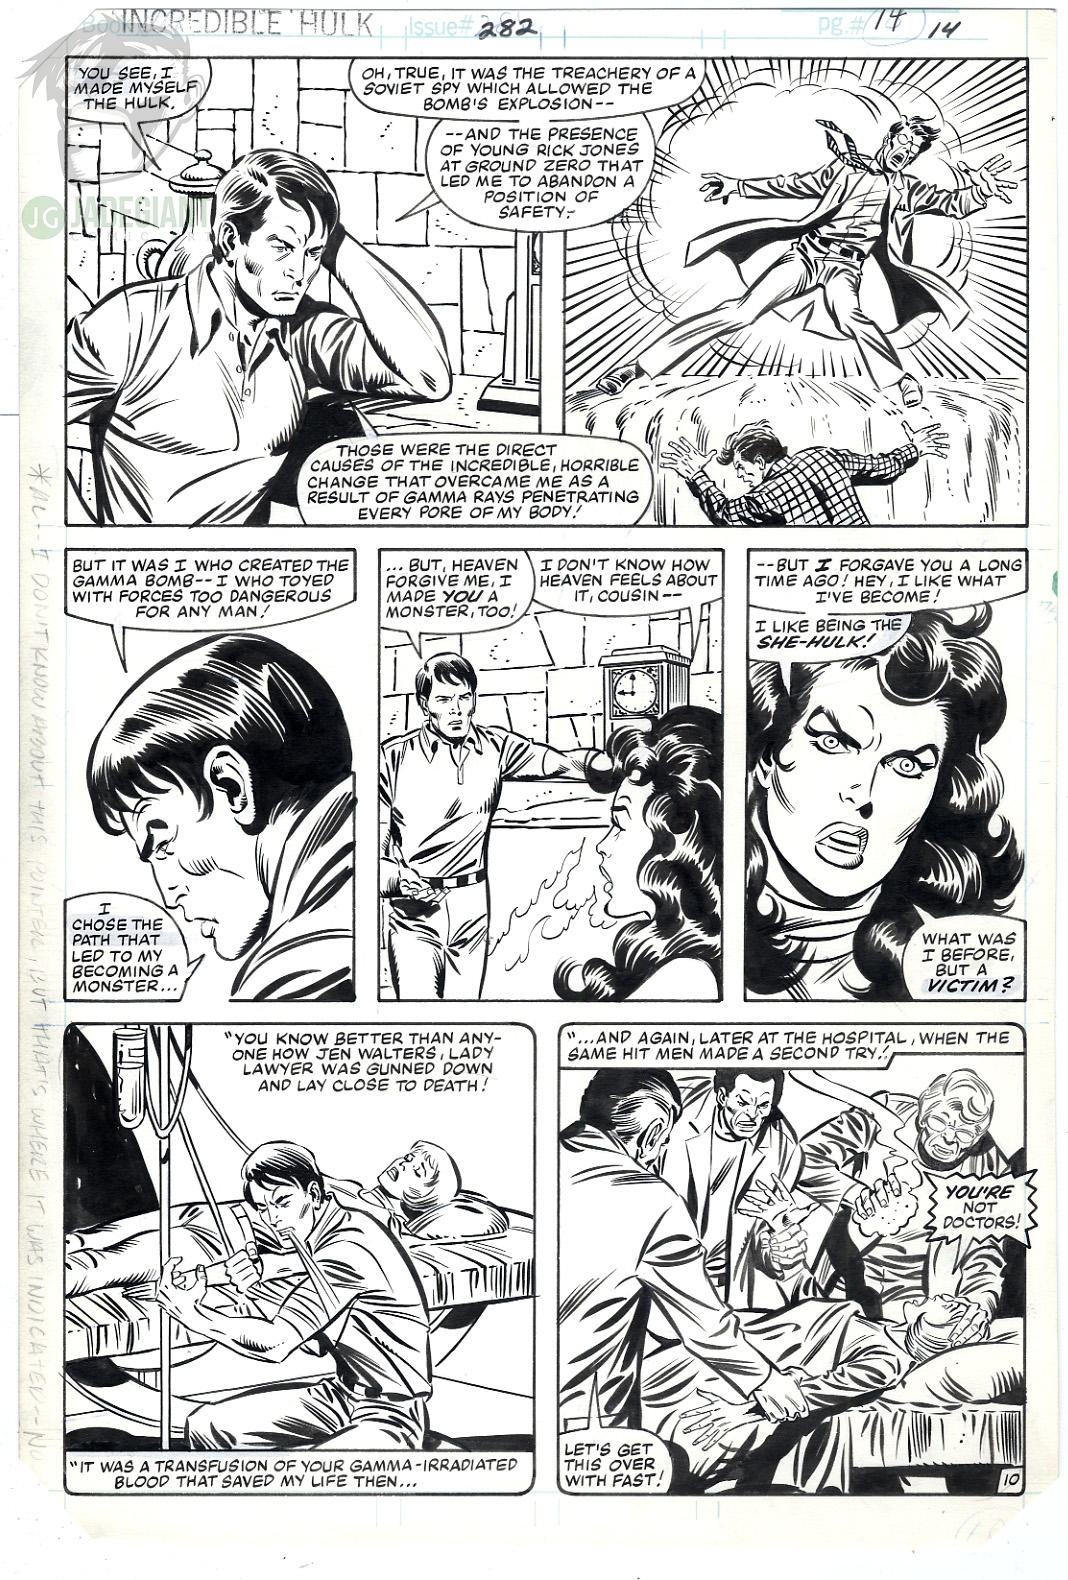 1983 Hulk 282 page 14 Hulk and She Hulk Comic Art